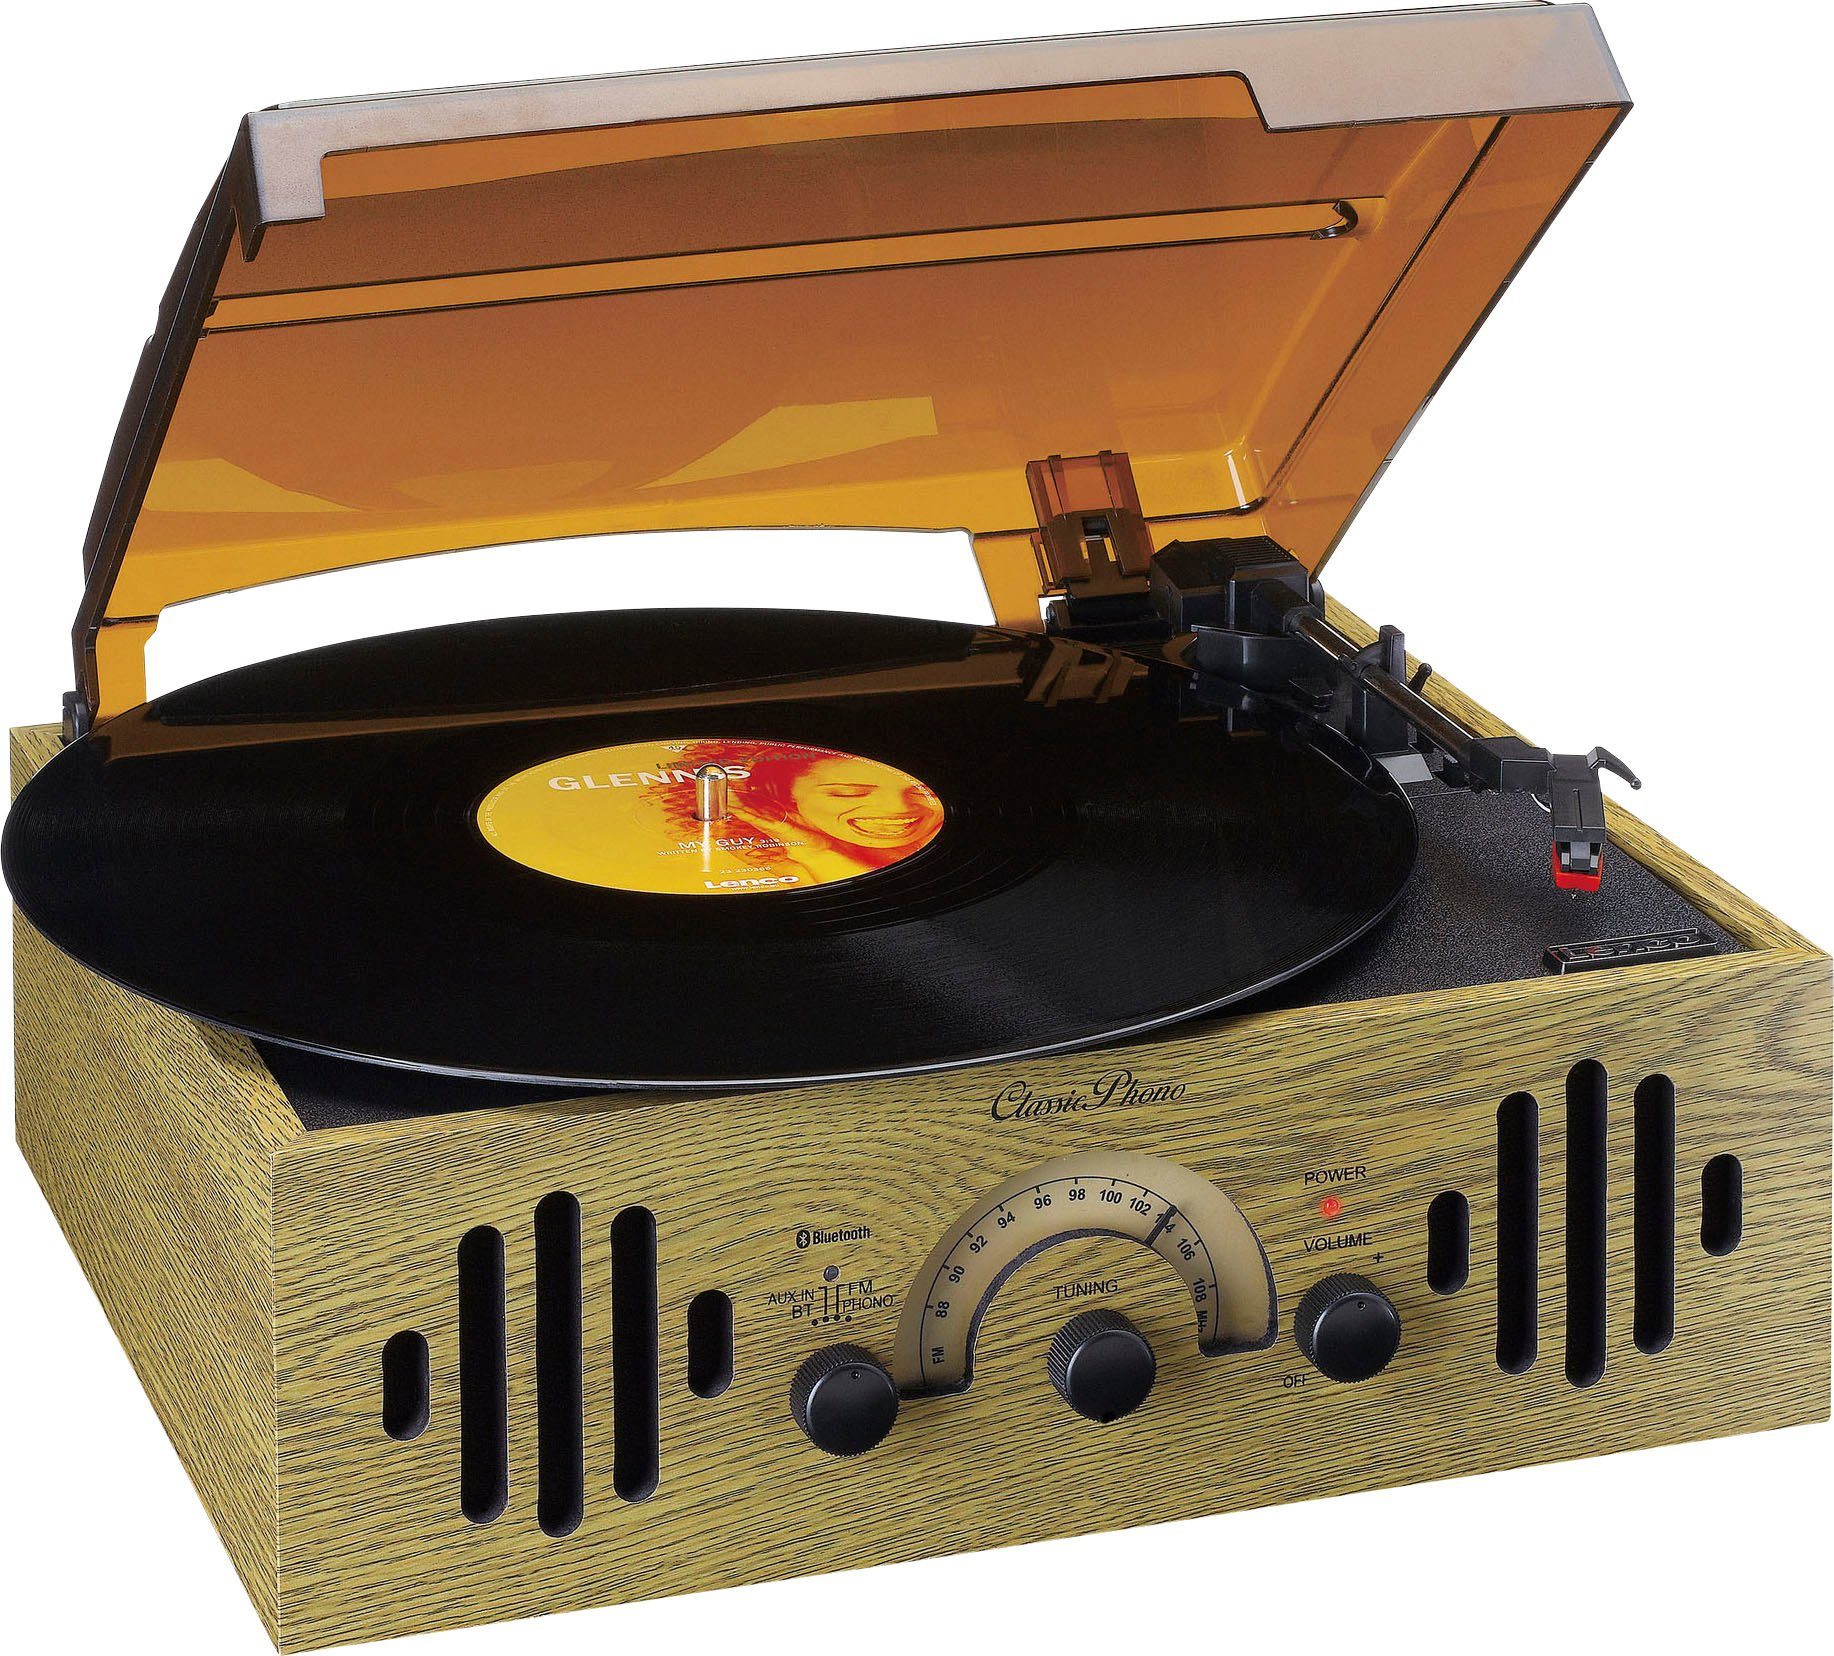 (Riemenantrieb) Phono Plattenspieler Lenco TT-41OK Classic Retro Plattenspieler -